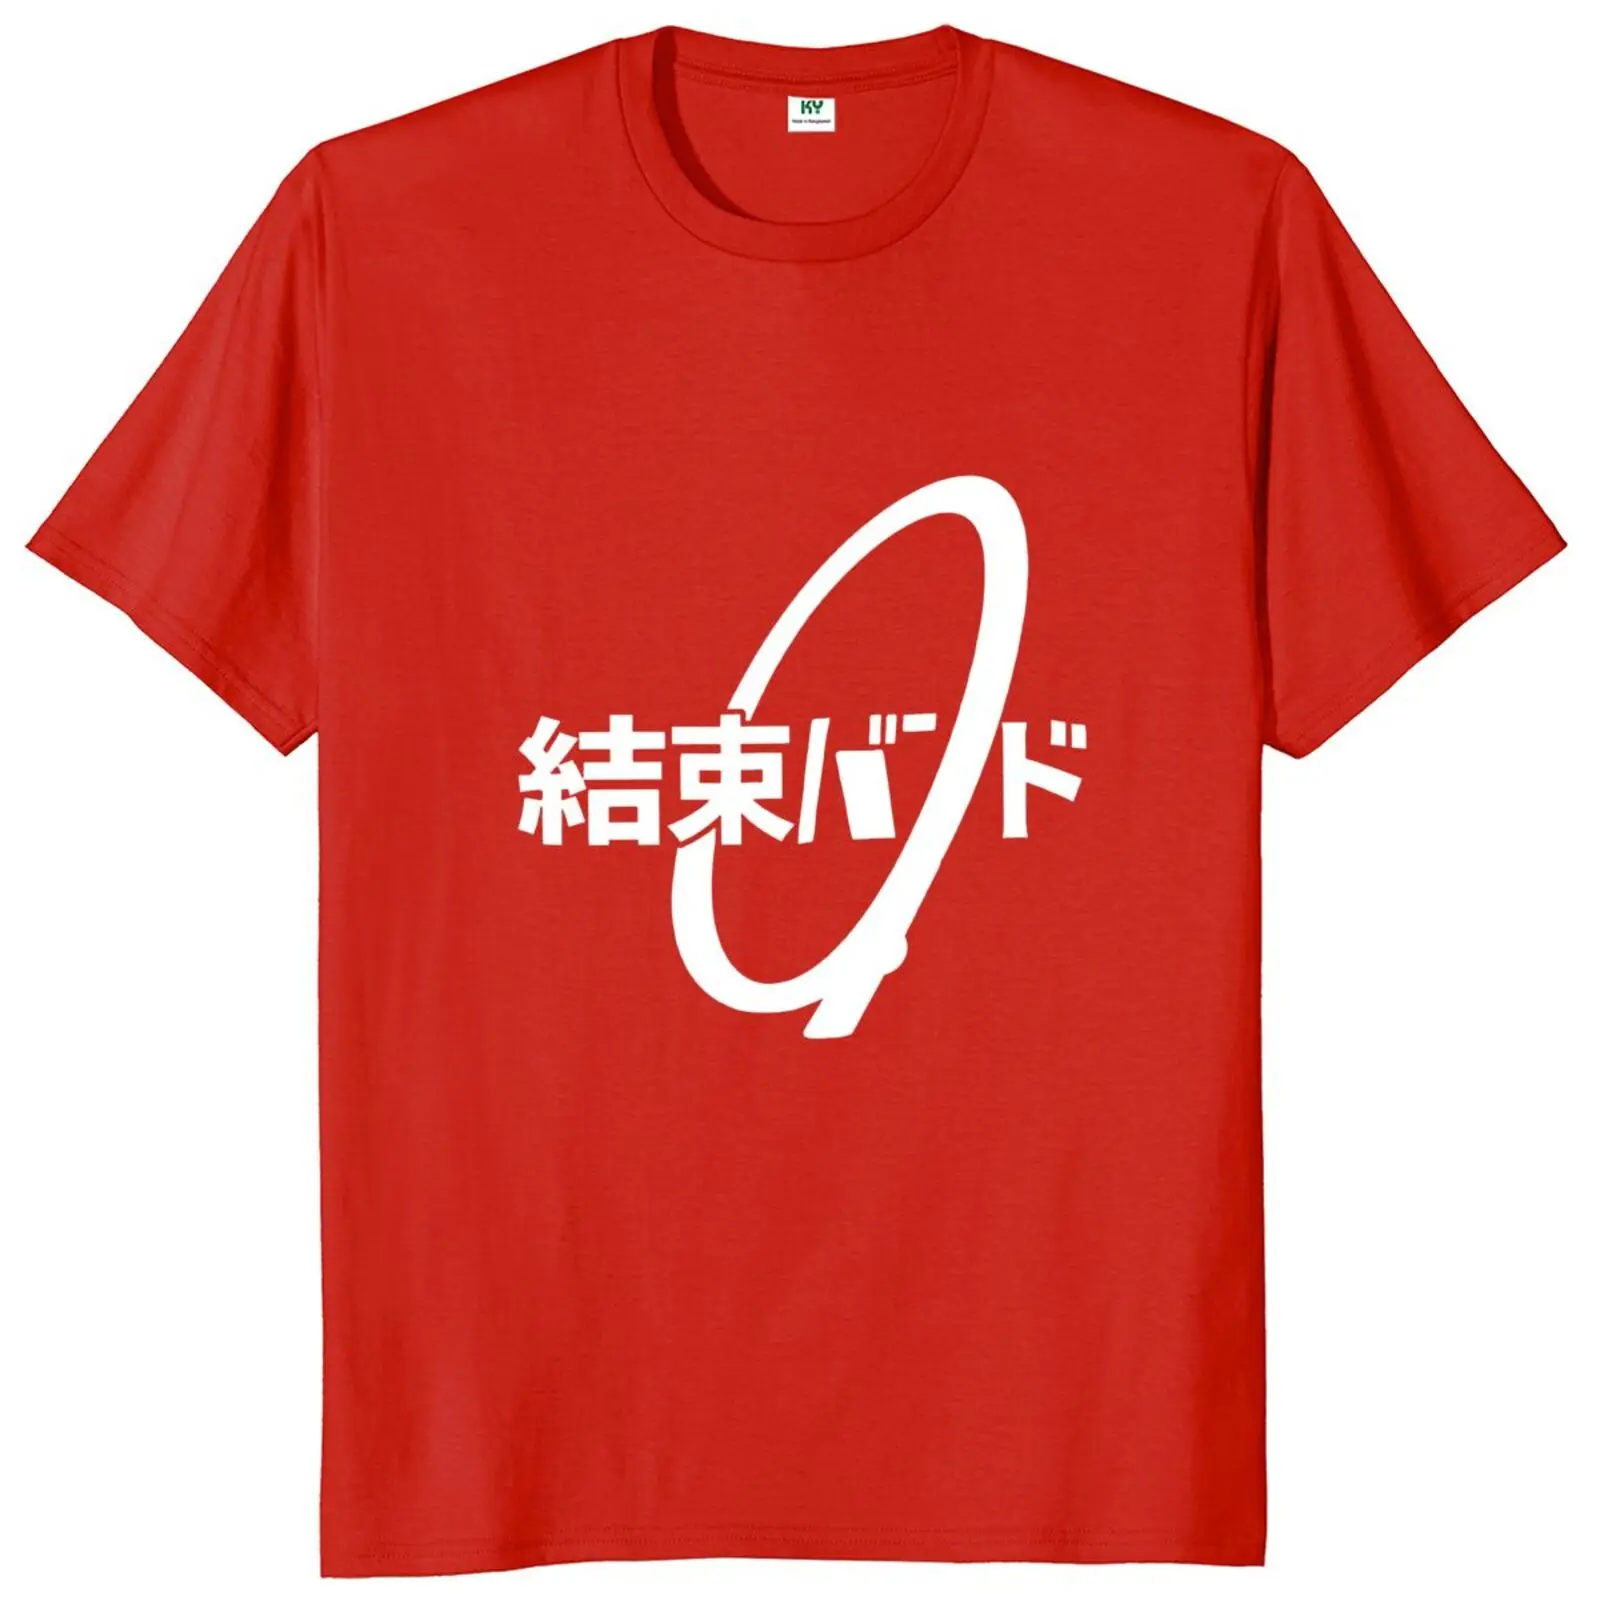 Camiseta con lazo de Cable kanji hiragana Kessoku Band Rocker, 100% algodón, talla europea